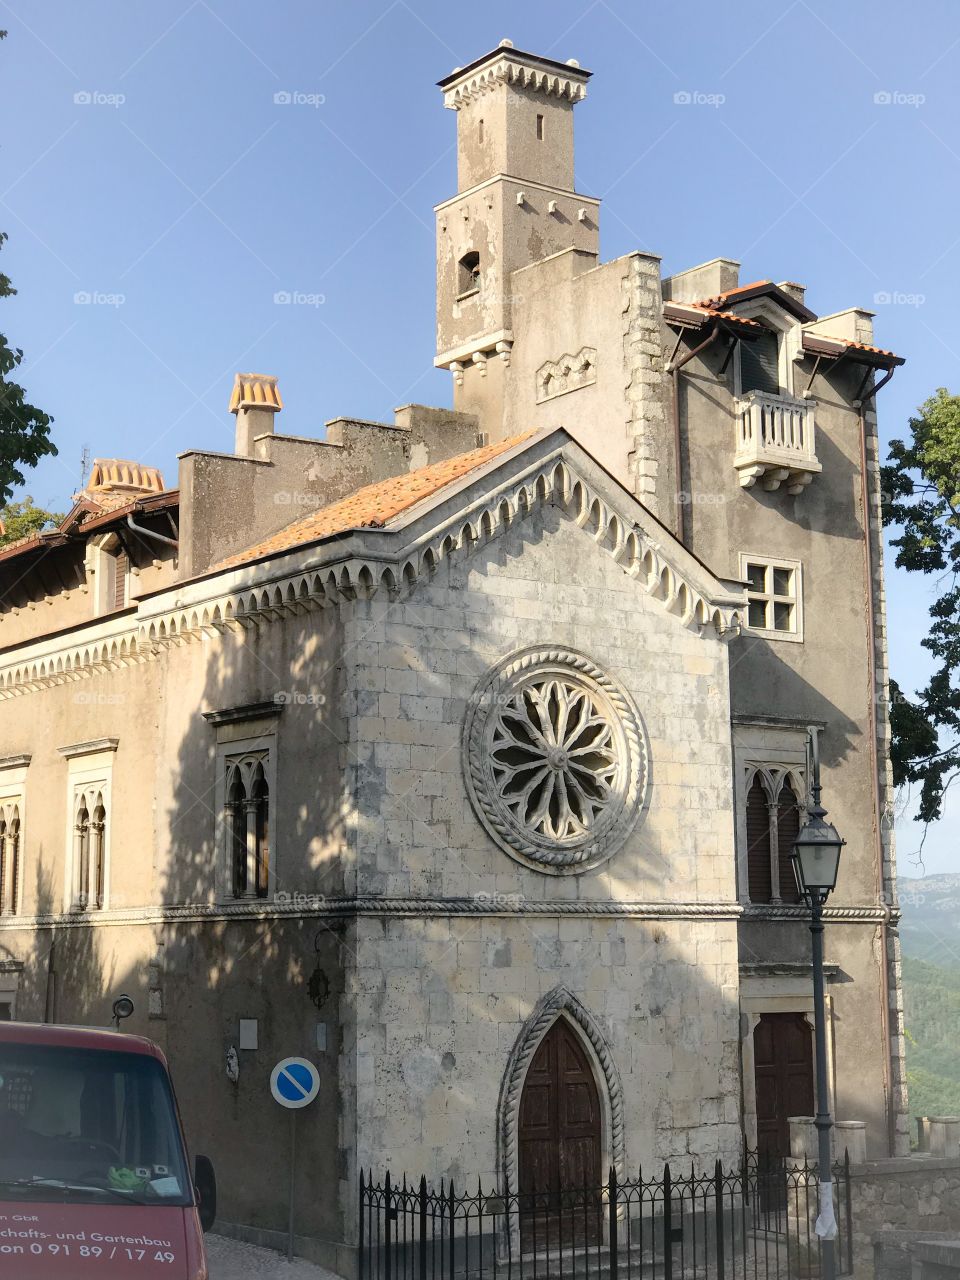 Chiesa presso Collalto Sabino, uno dei borghi più belli d’Italia